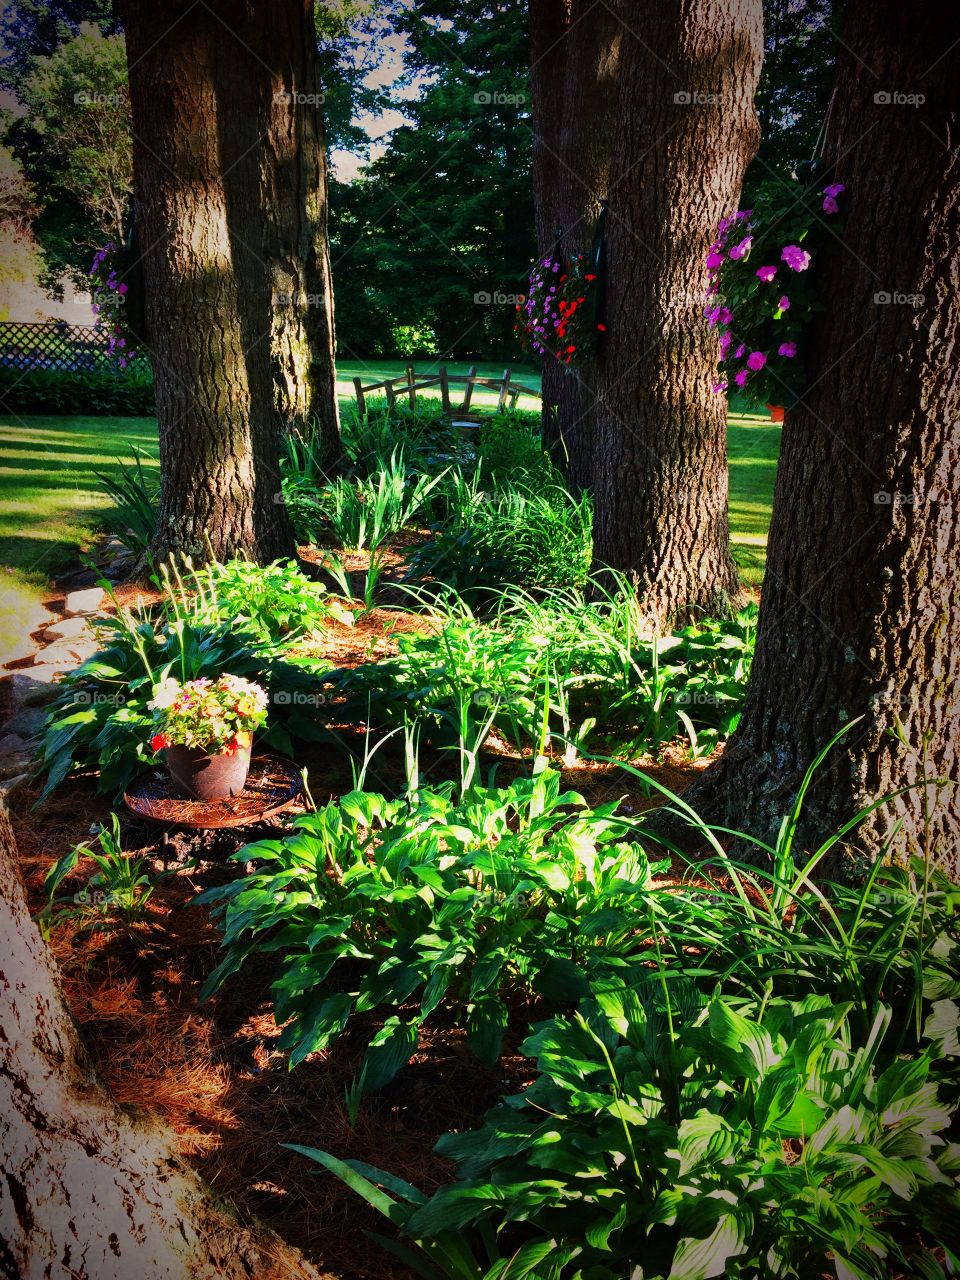 Serene Backyard. My In-Laws backyard. So beautiful. Adams, Massachusetts 